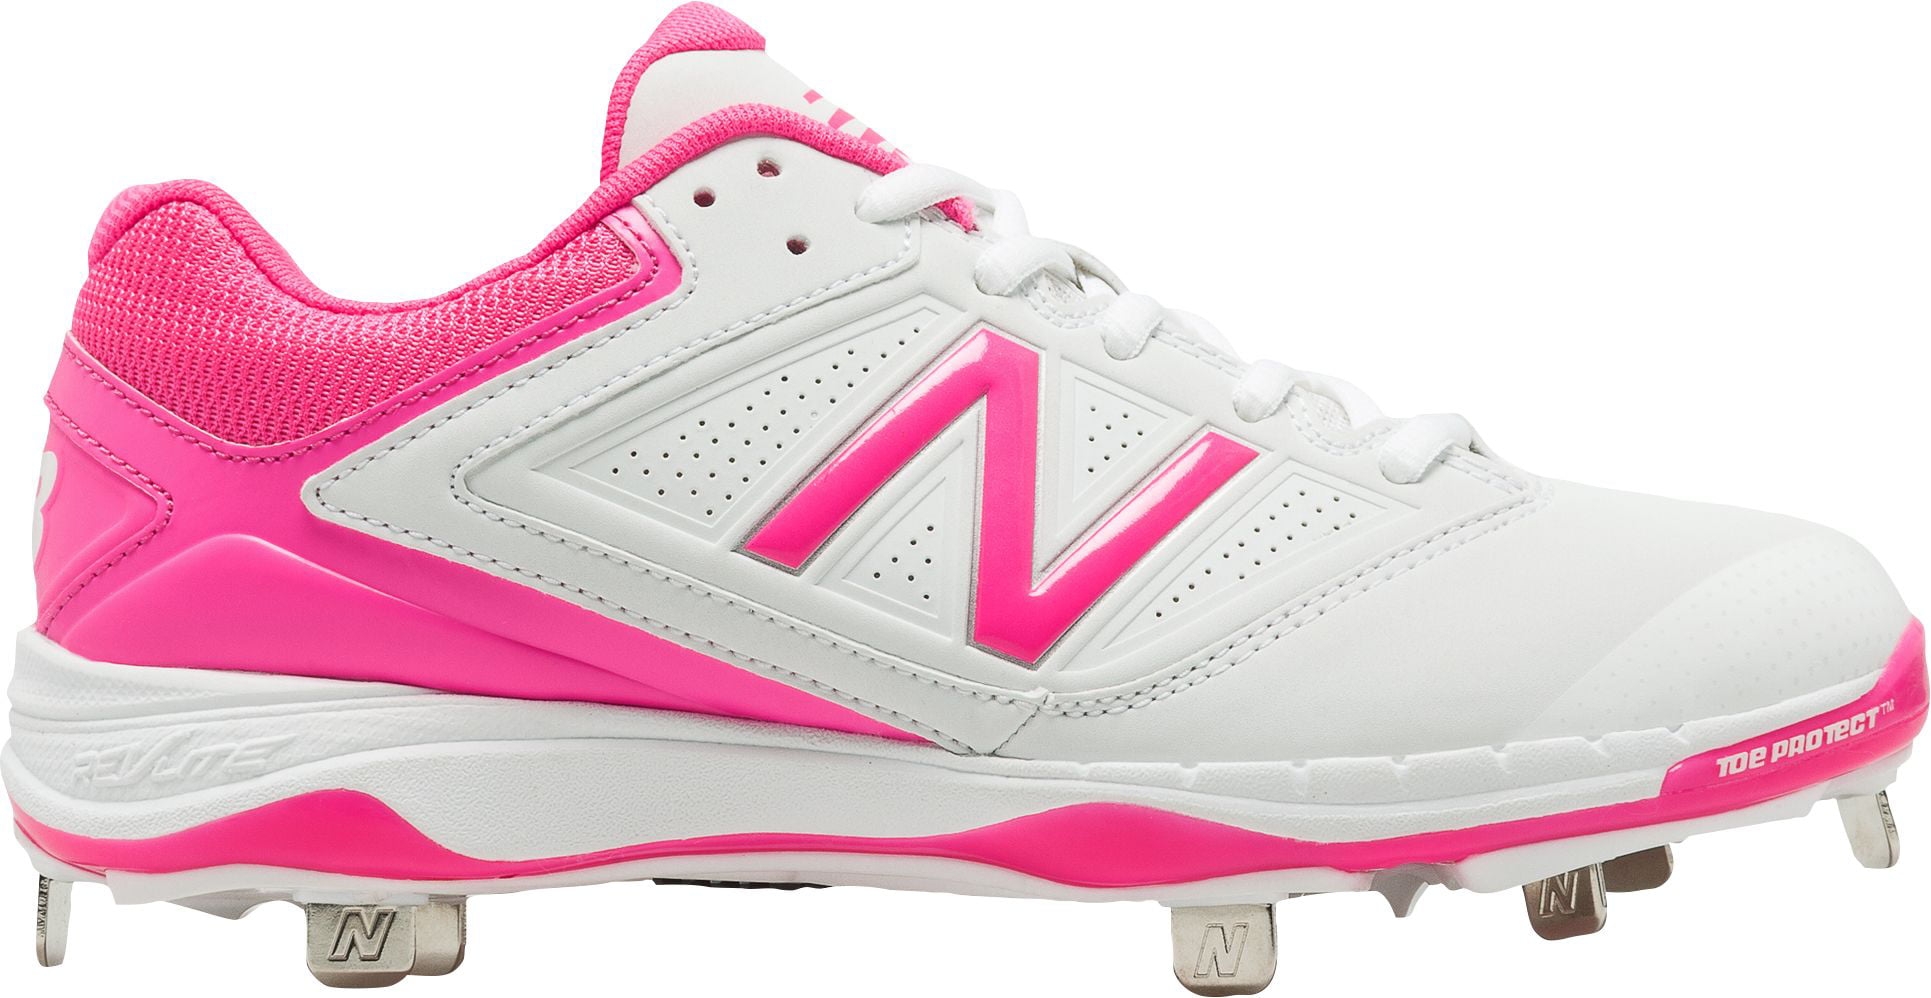 pink new balance baseball cleats